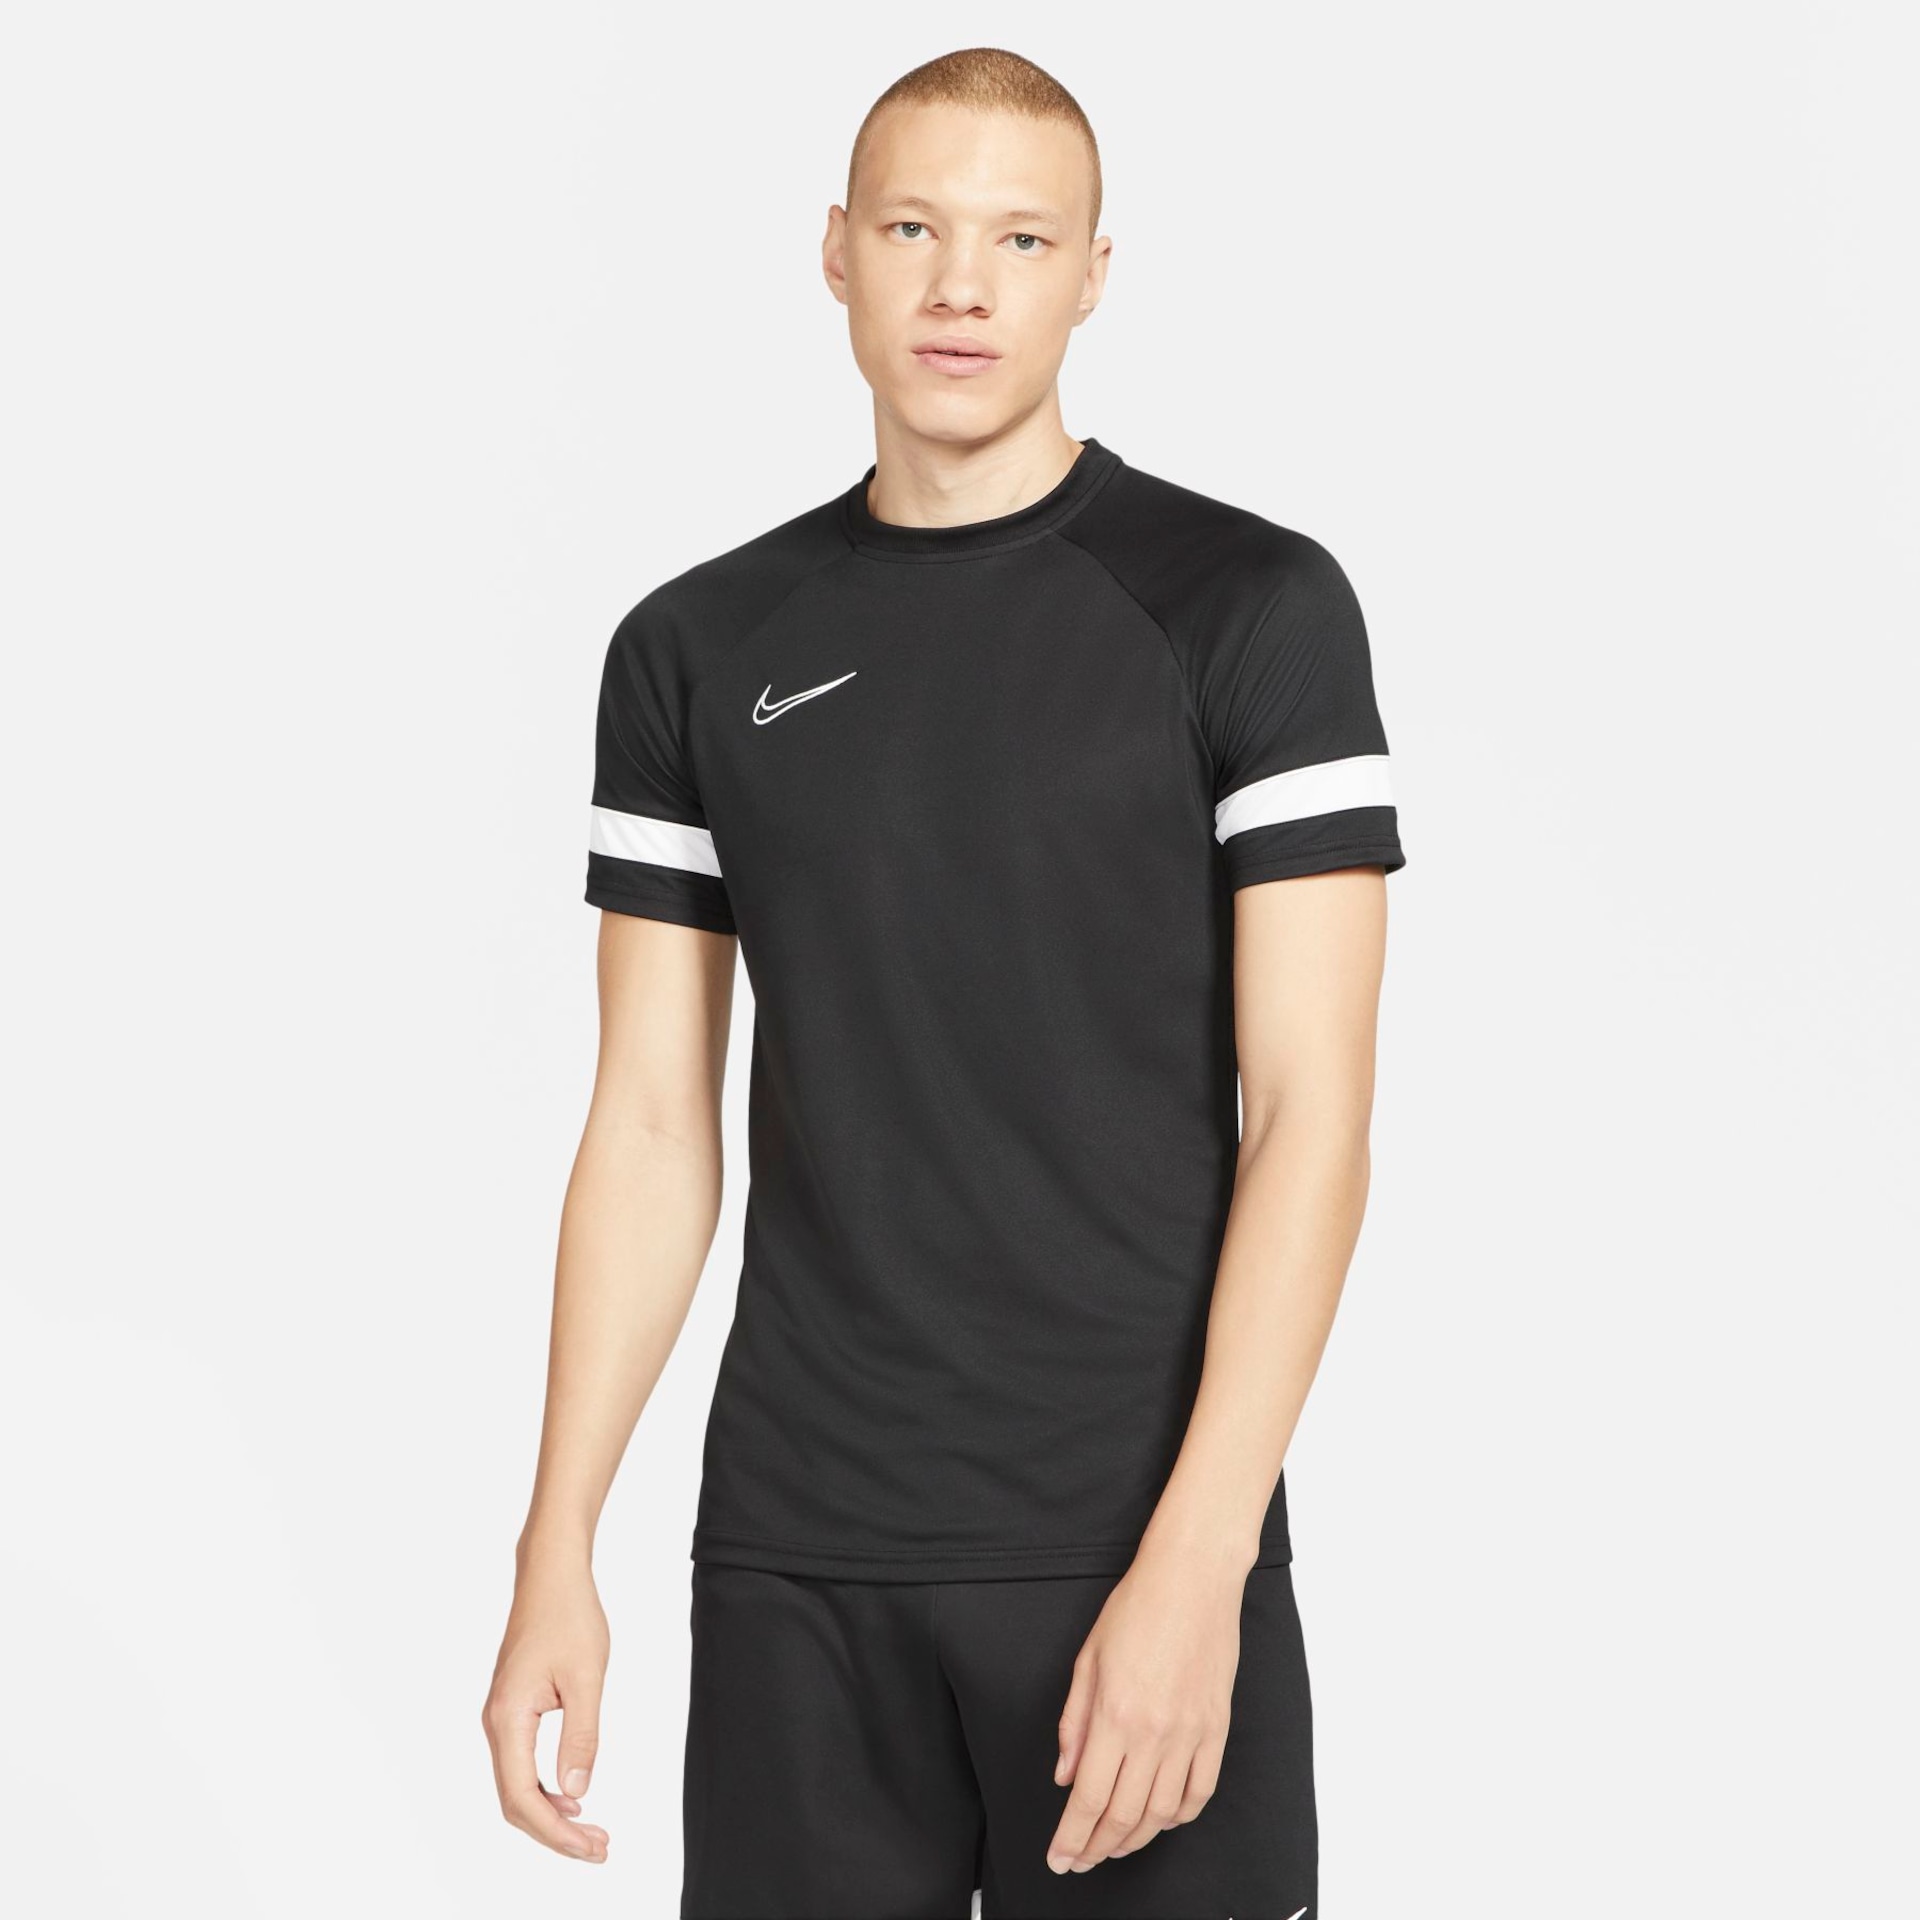 Camisetas » Masculino - Nike - Ofertas e Preços - Just Nike.com.br